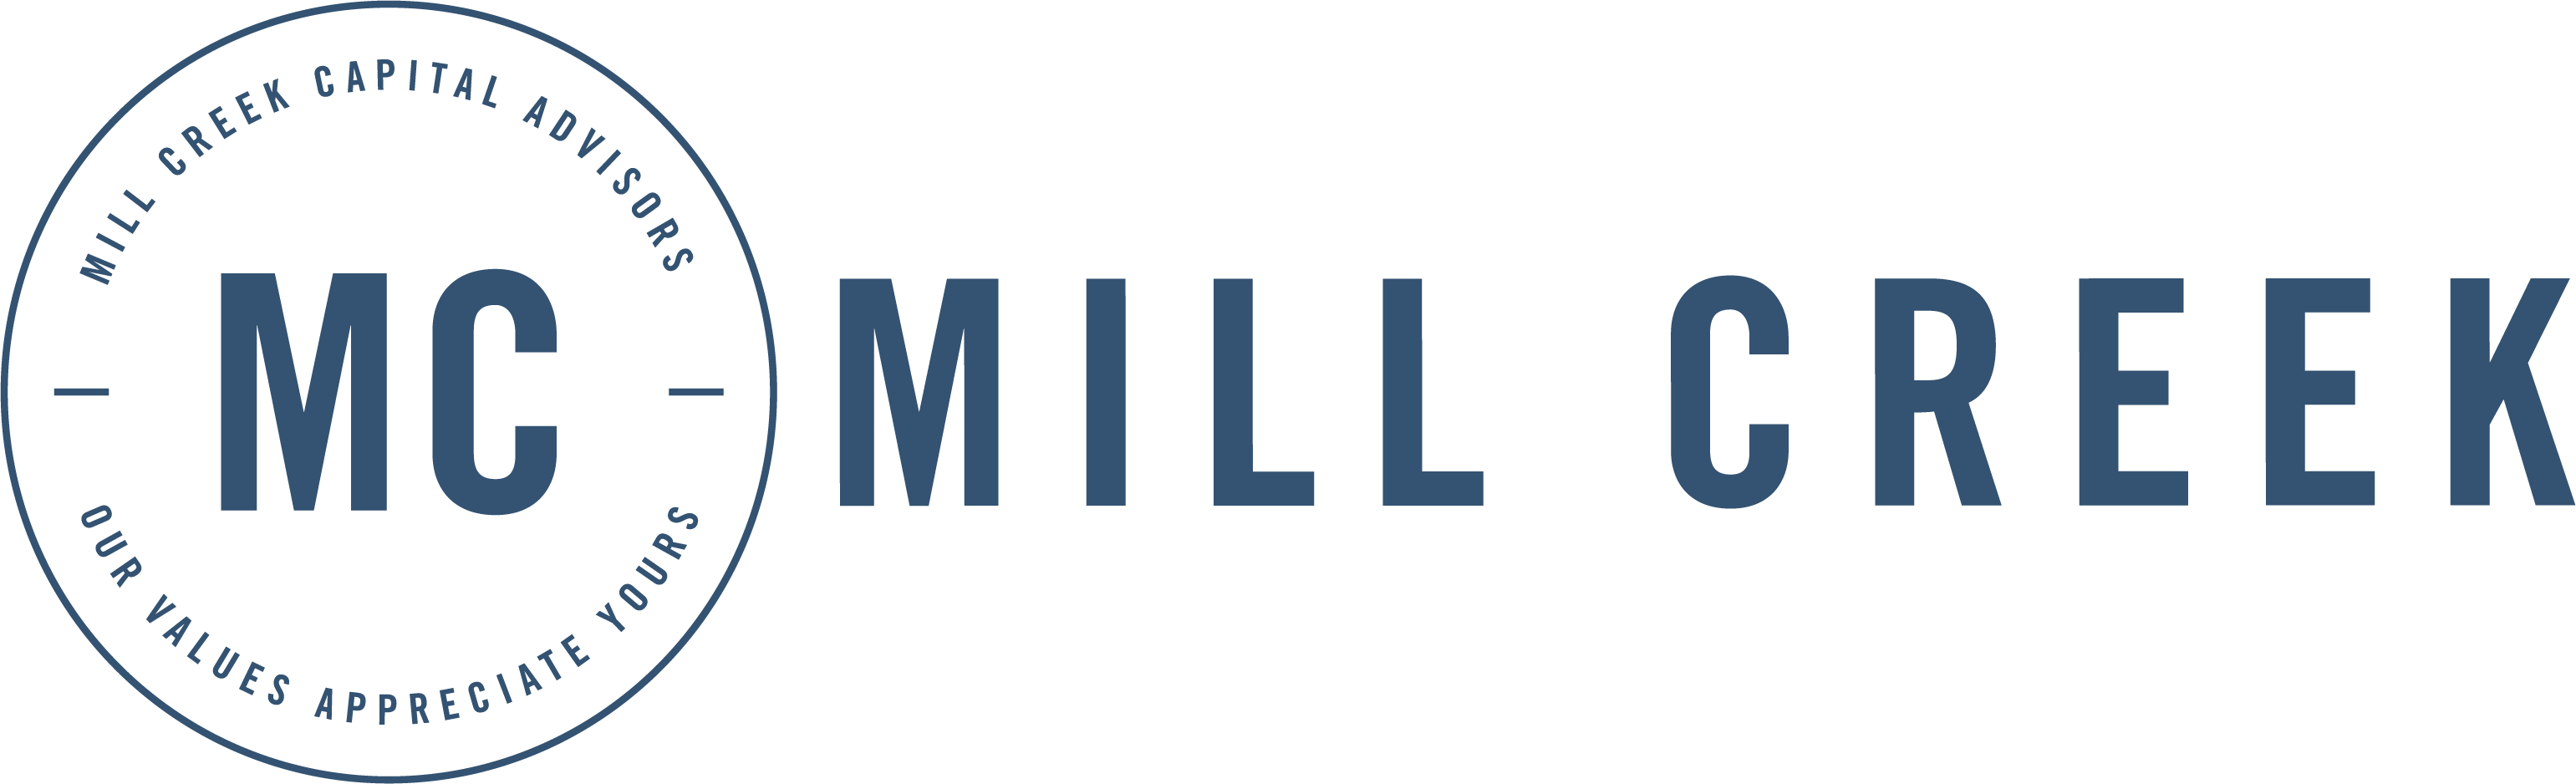 Mill Creek Brand Mark and Tagline